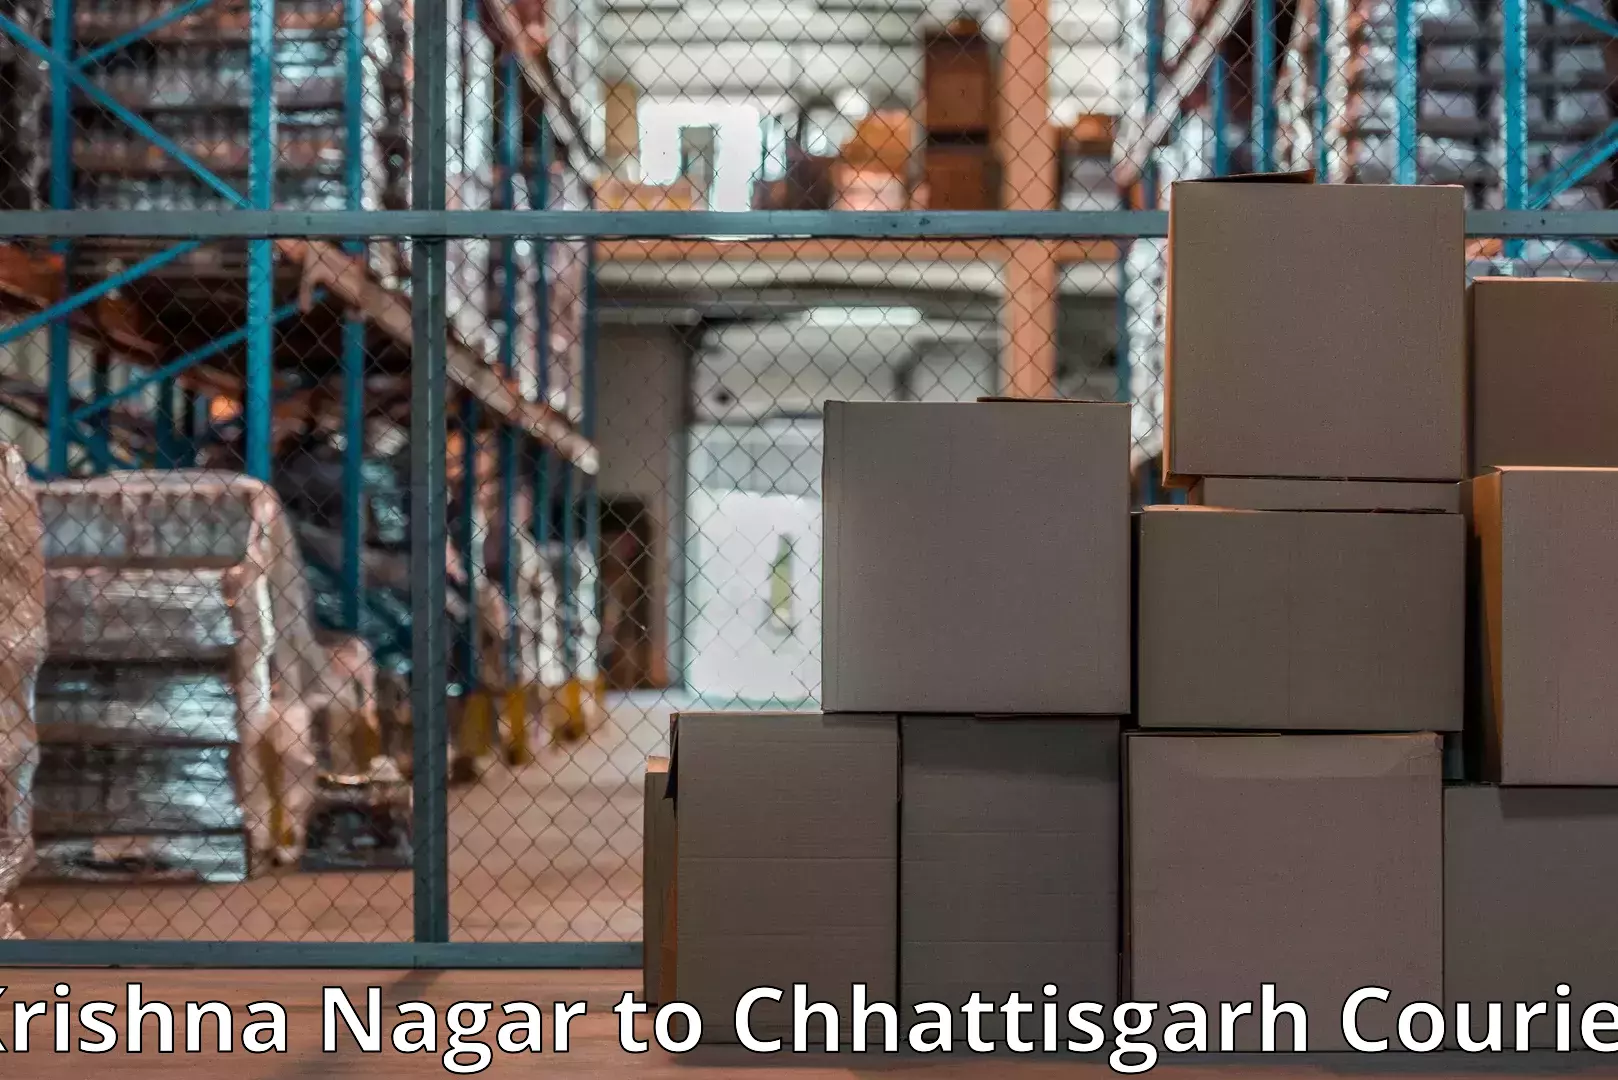 Furniture shipping services Krishna Nagar to Raigarh